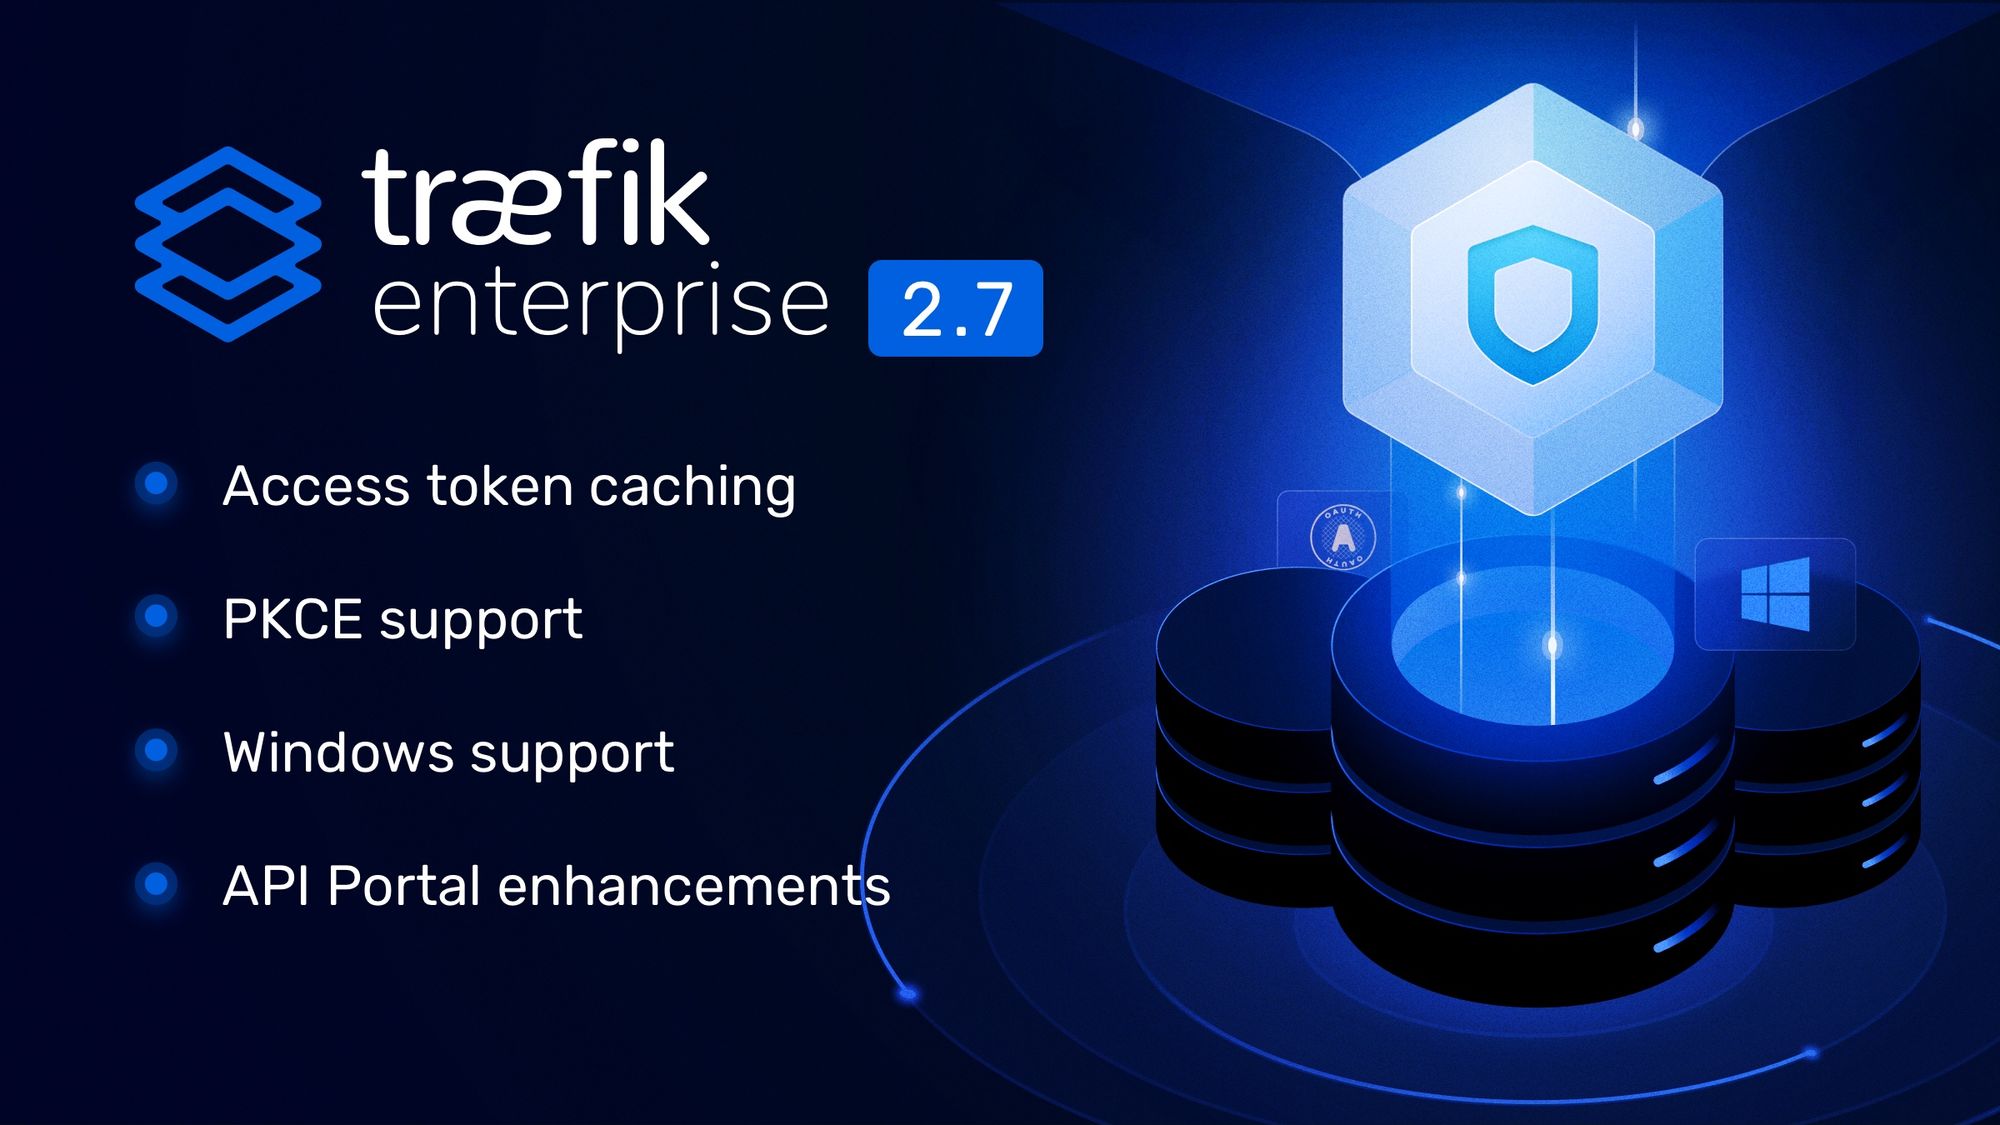 traefik enterprise 2.7